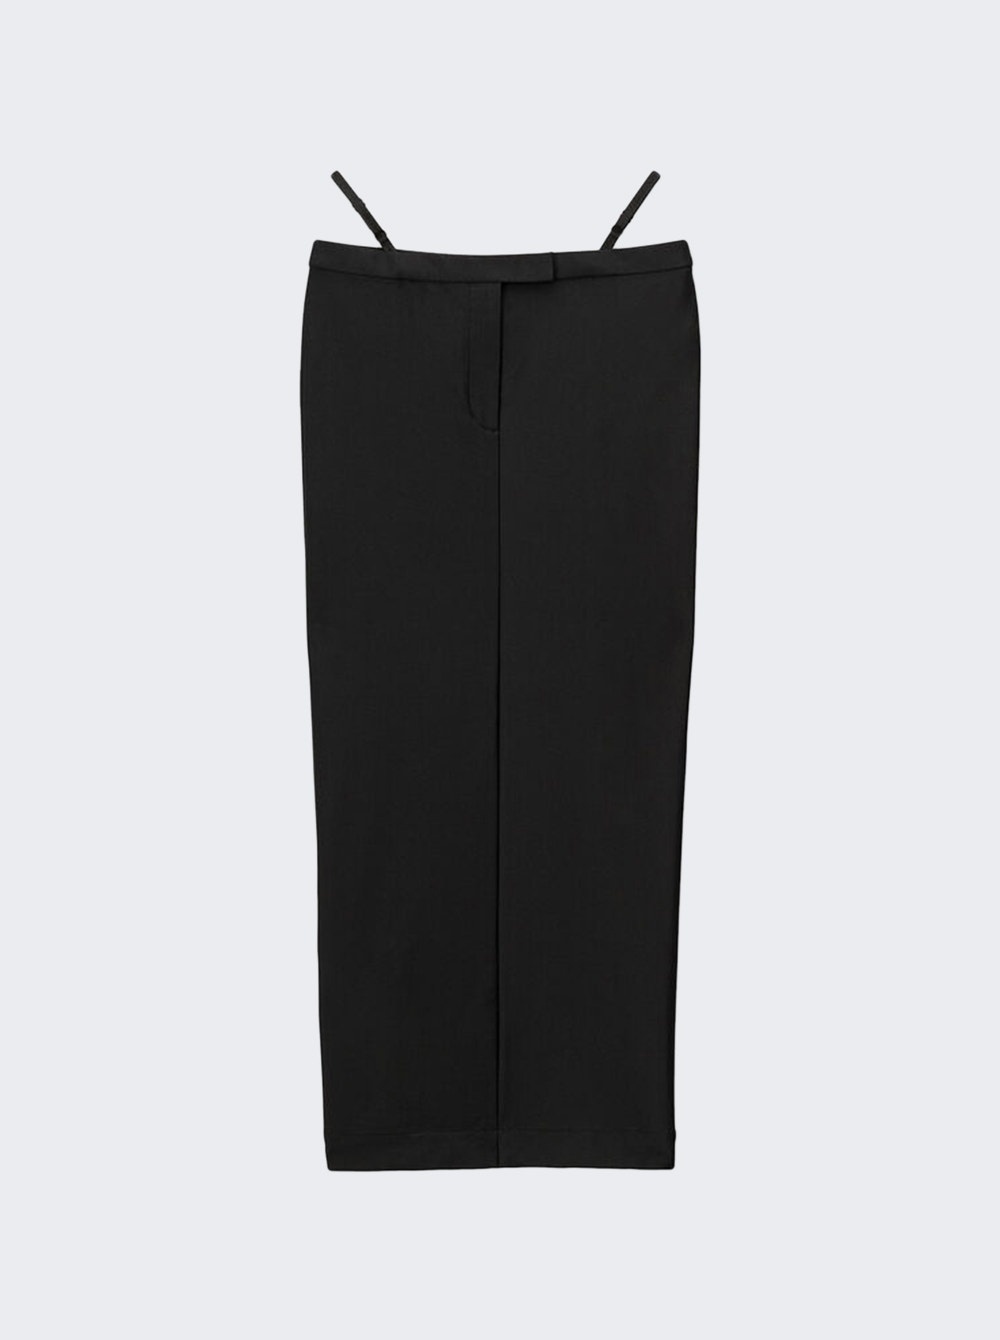 G-string Maxi Skirt Black - 1